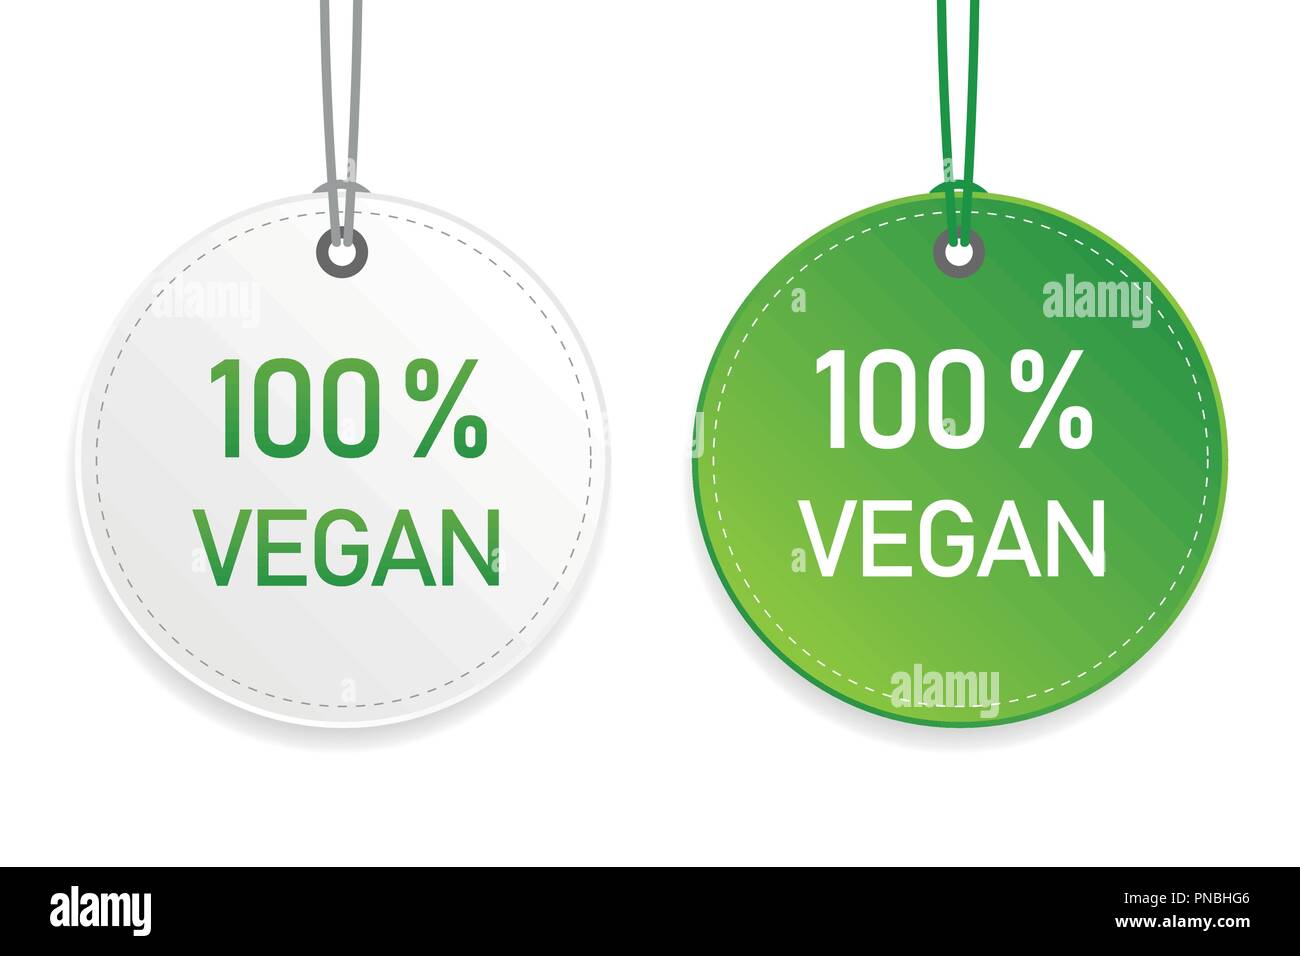 Vegan Typografie Bio Lebensmittel kennzeichnen und beschriften grüne und weiße Design-Elemente auf weißem Hintergrund Vektor-illustration EPS 10 isoliert Stock Vektor